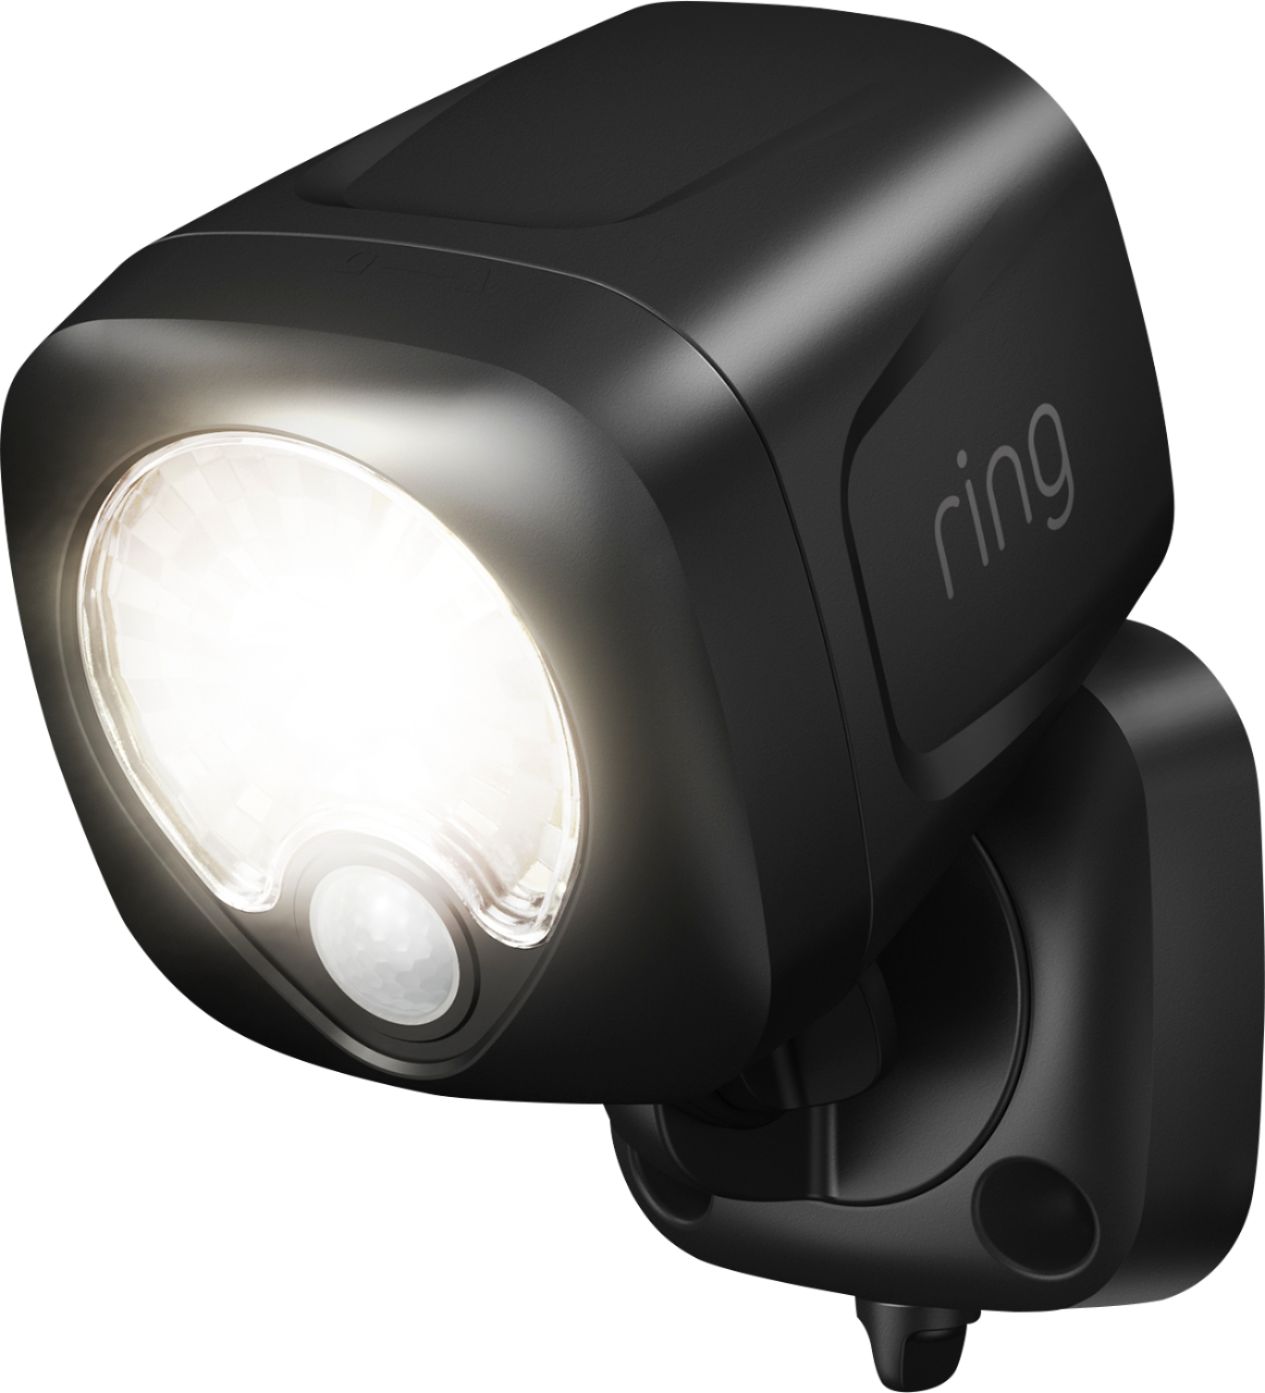 Ring - Battery-Powered LED Smart Spotlight - Black